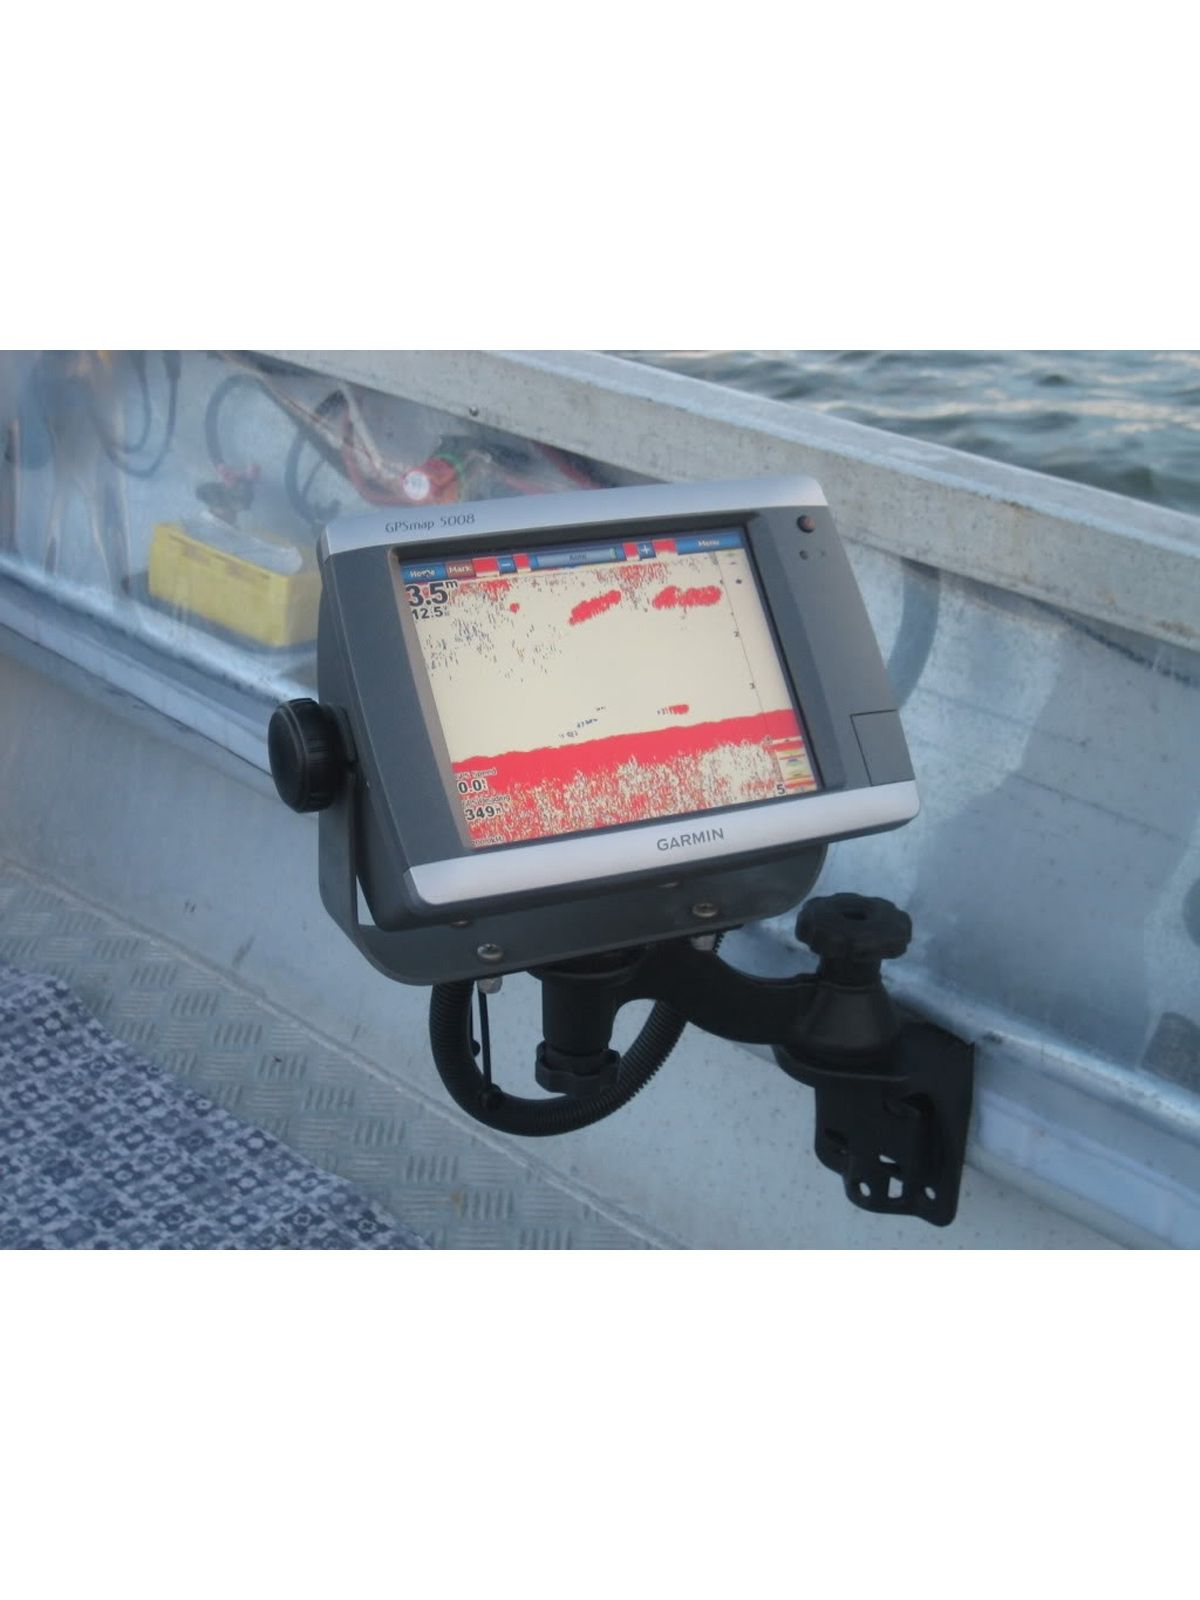 RAM Mounts Schwenkarm mit Universalplatte für Marine-GPS - Vertikal-Basis, Universal-Platte (50,8 x 158,9 mm), Armlänge ca. 150 mm, im Polybeutel